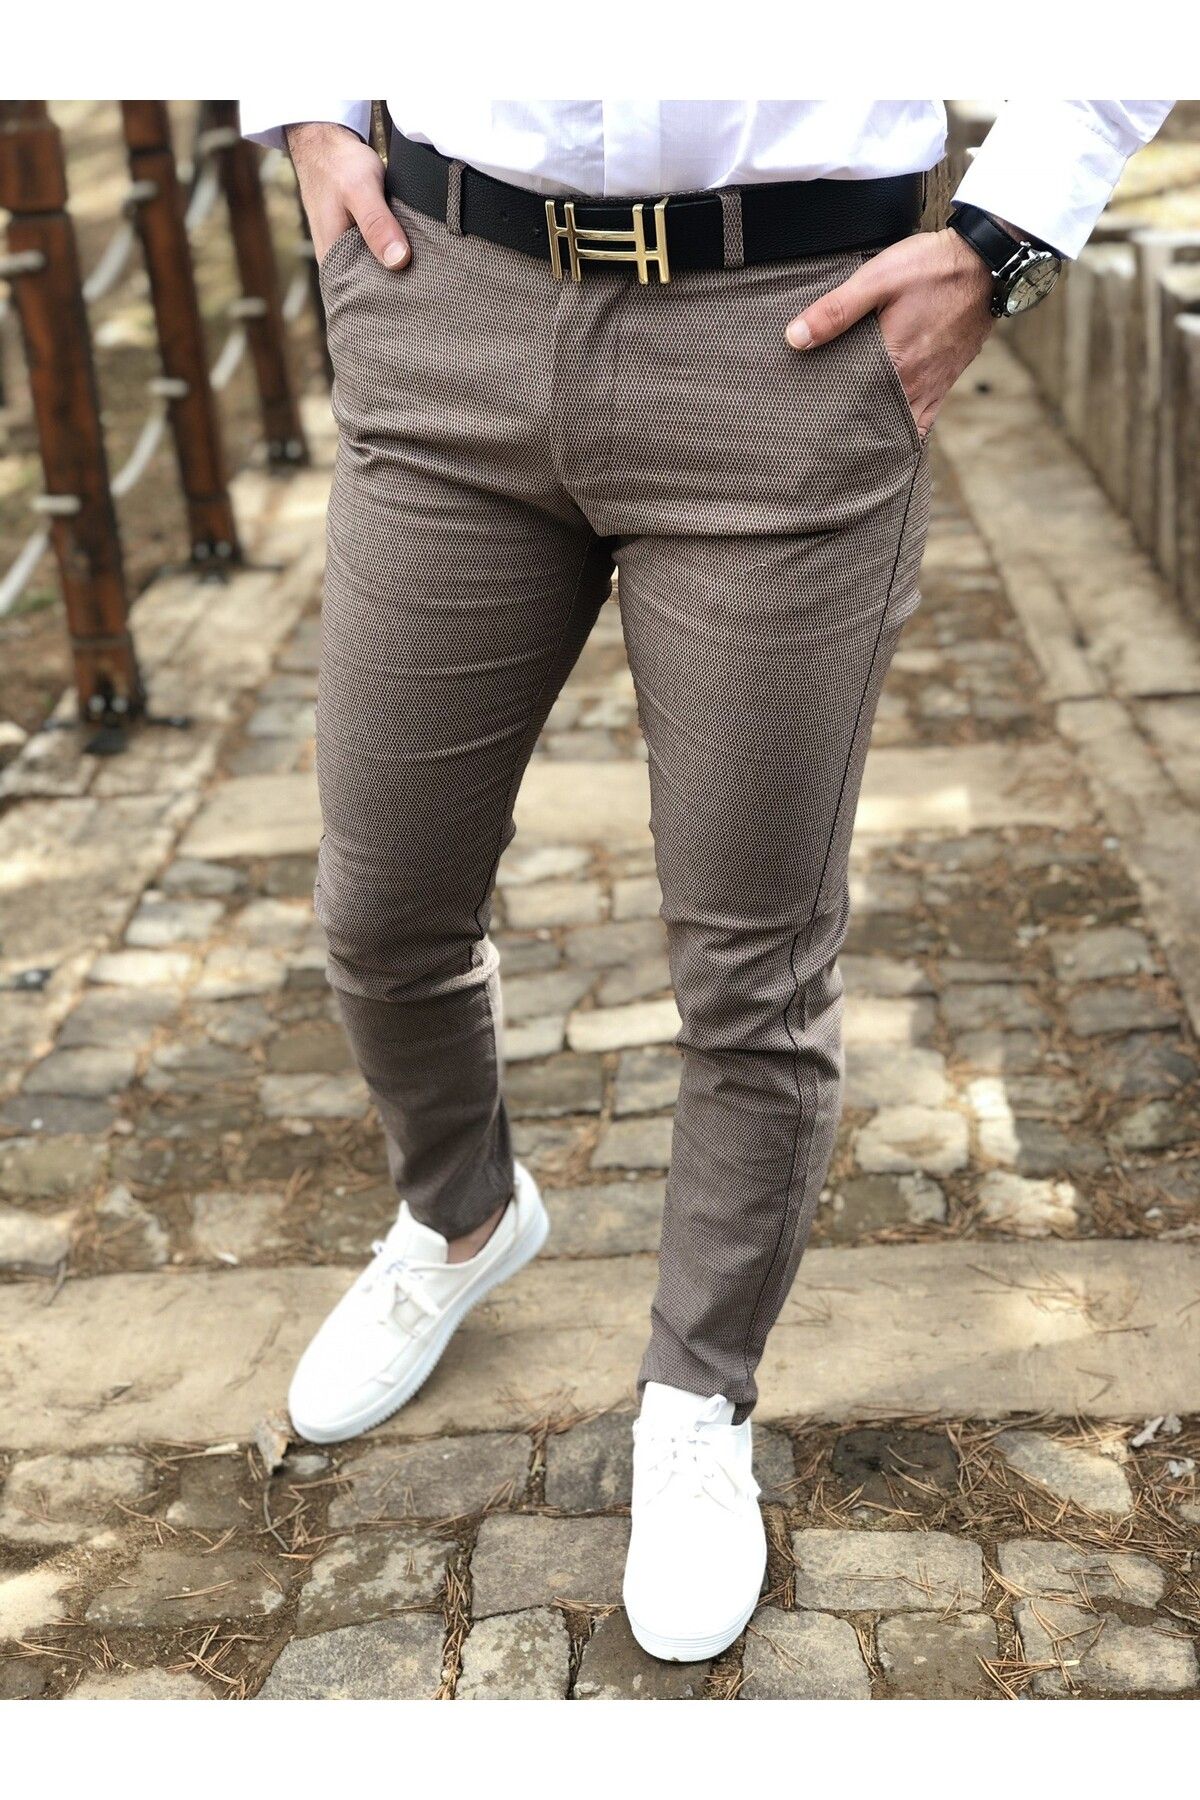 ukdwear Erkek Kahverengi İtalyan Kesim Petek Desen Keten Pantolon